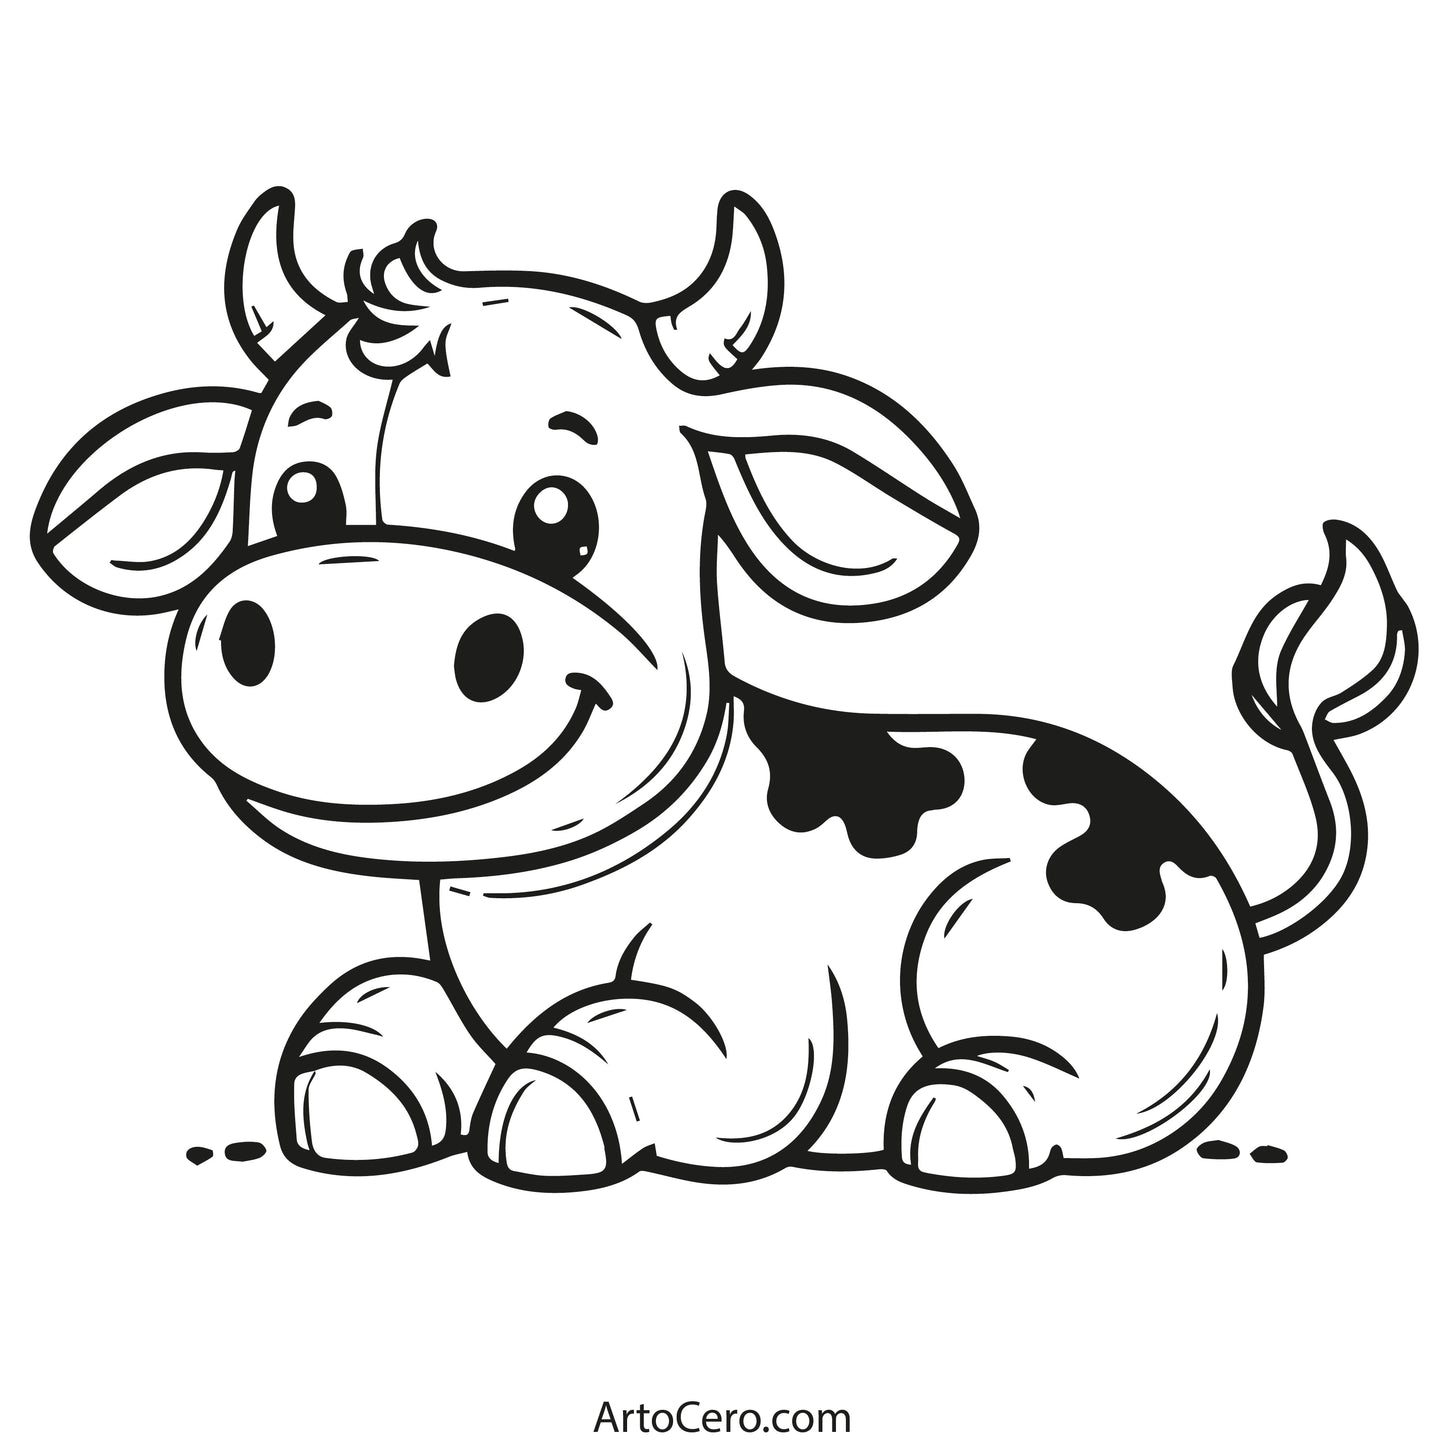 Cow Coloring Digital Book Vol.1 - ArtoCero.com